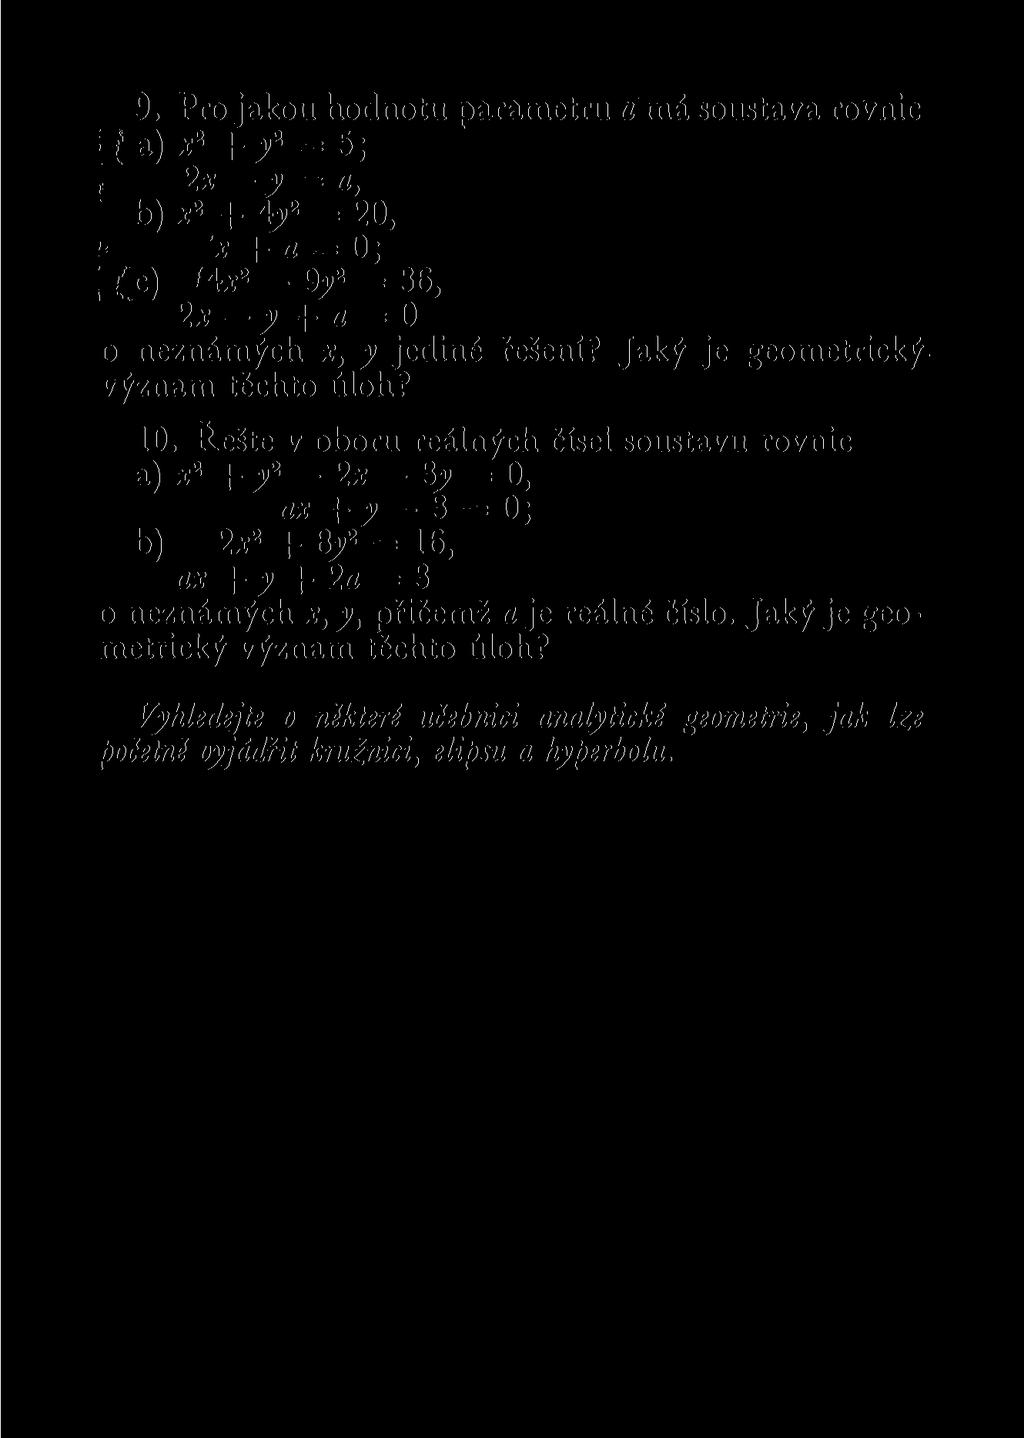 9. Pro jakou hodnotu parametru o rná soustava rovnic i t a) x 2 + j 2 = 5; i 2 x y = a, b) x 2 + 4j 2 = 20, x + a = 0; ; r c ) Hx 2-9y 2 = 36, 2x y + a = 0 o neznámých x, y jediné řešení?